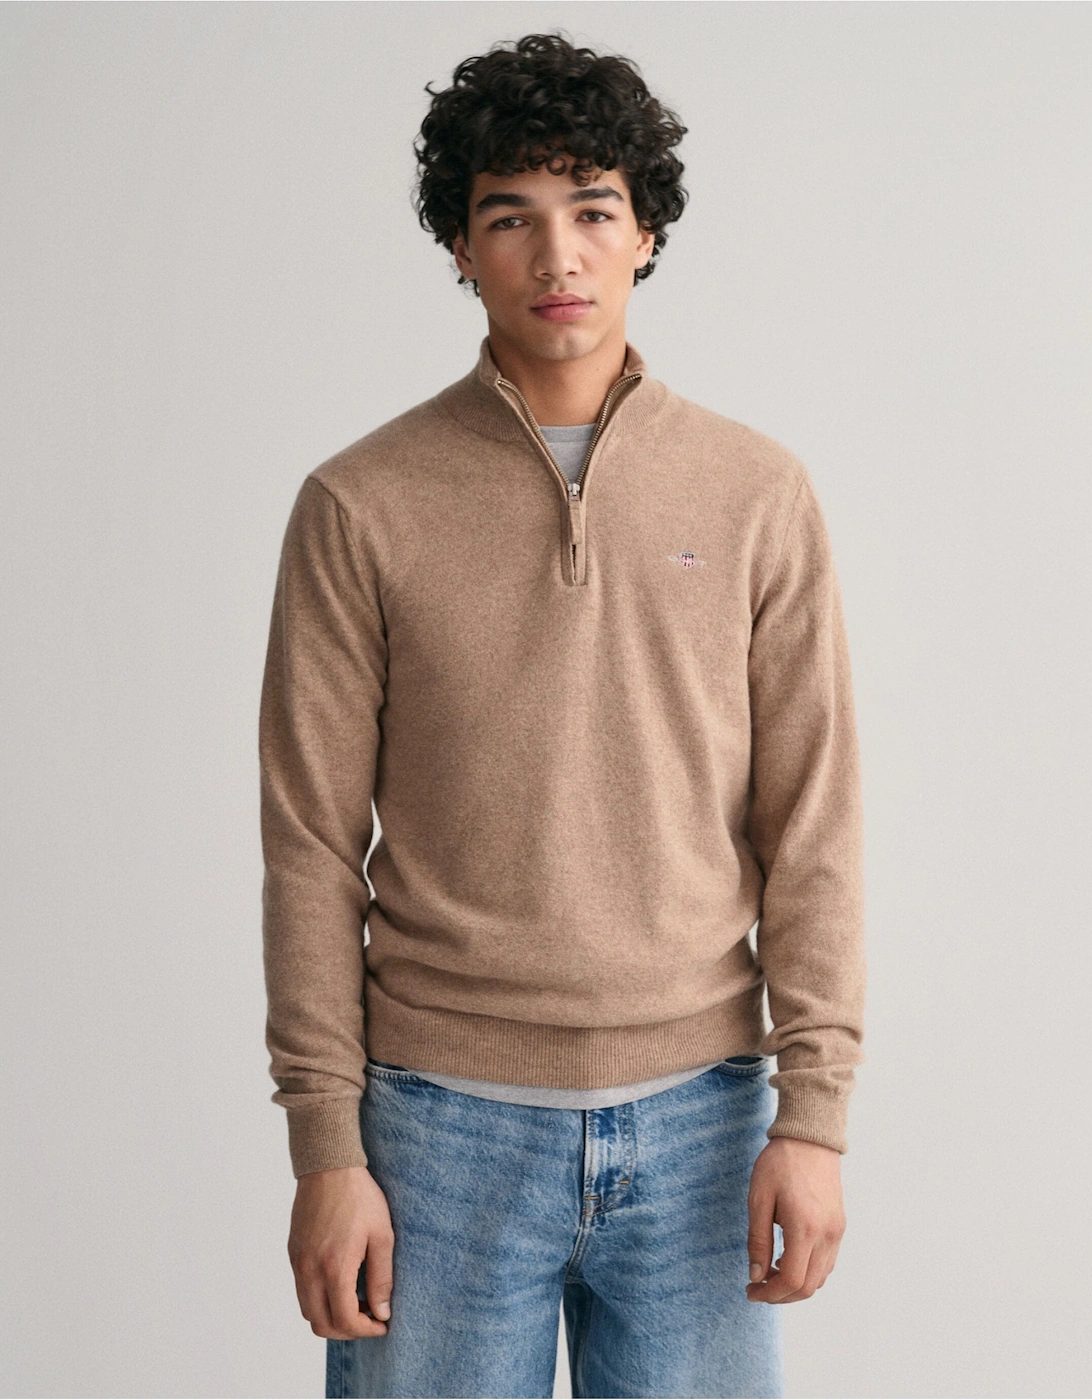 Superfine Lambswool Beige Half-Zip Sweater